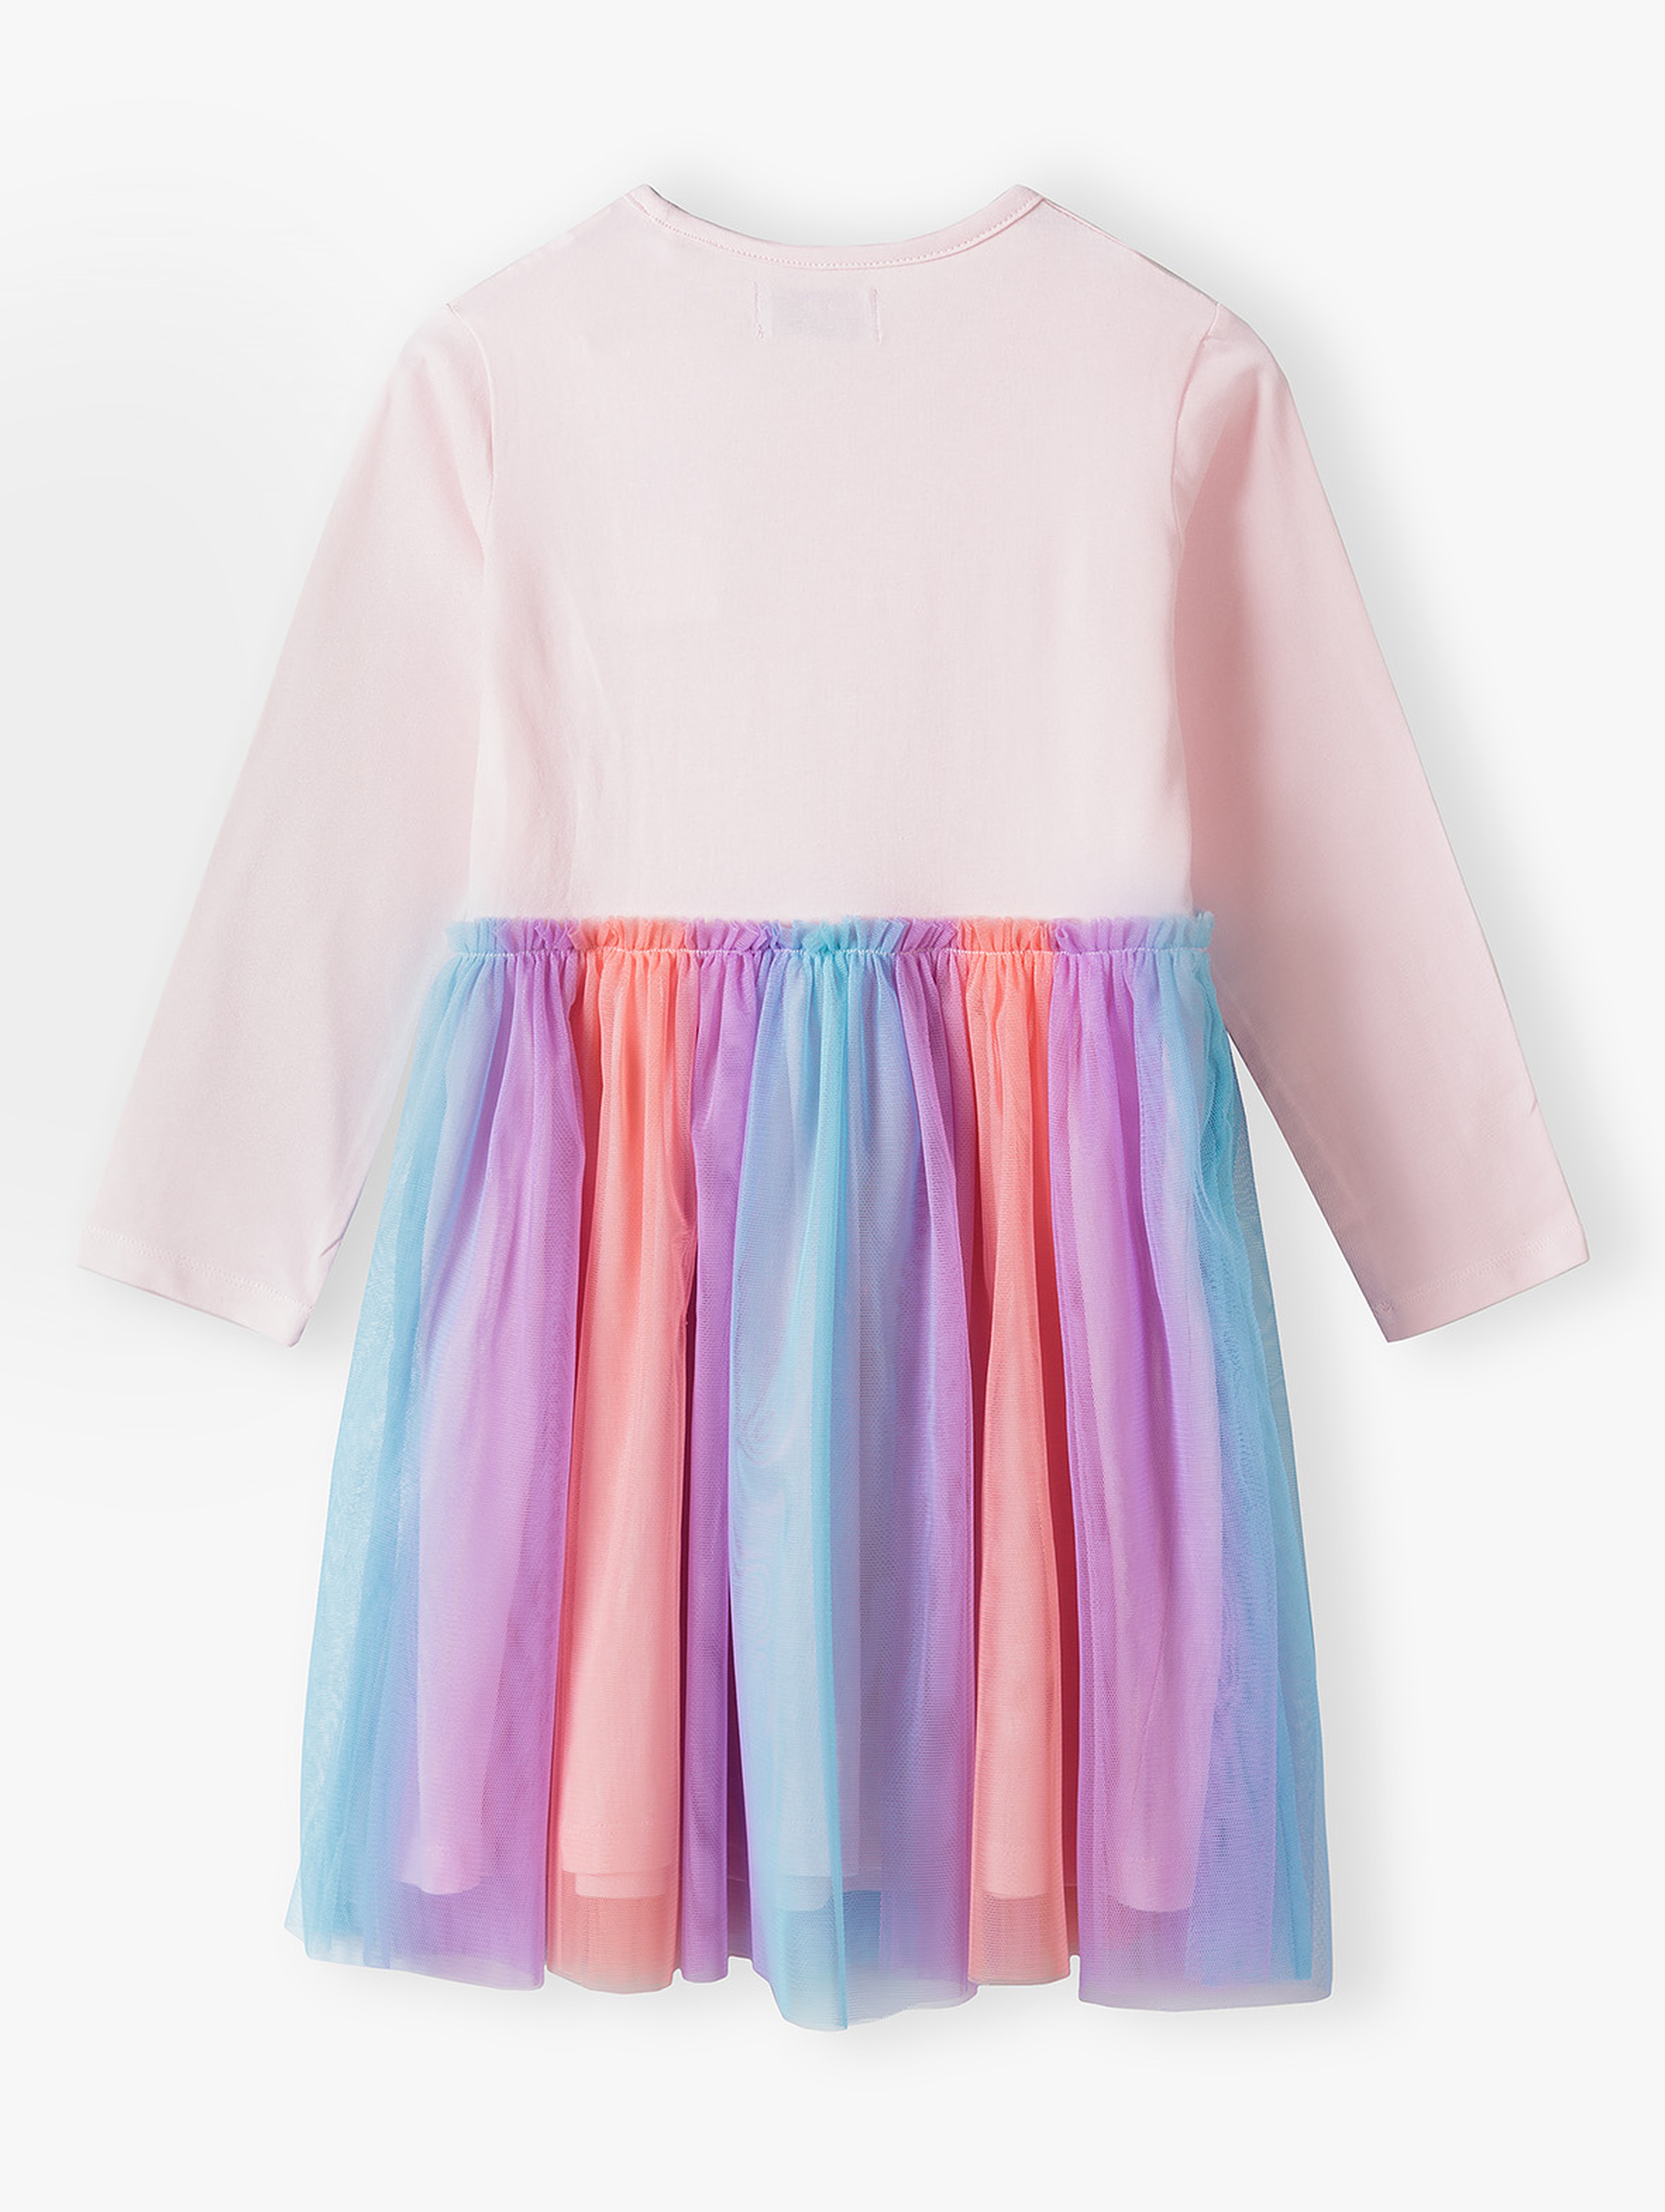 Kolorowa sukienka dla dziewczynki z jednorożcem